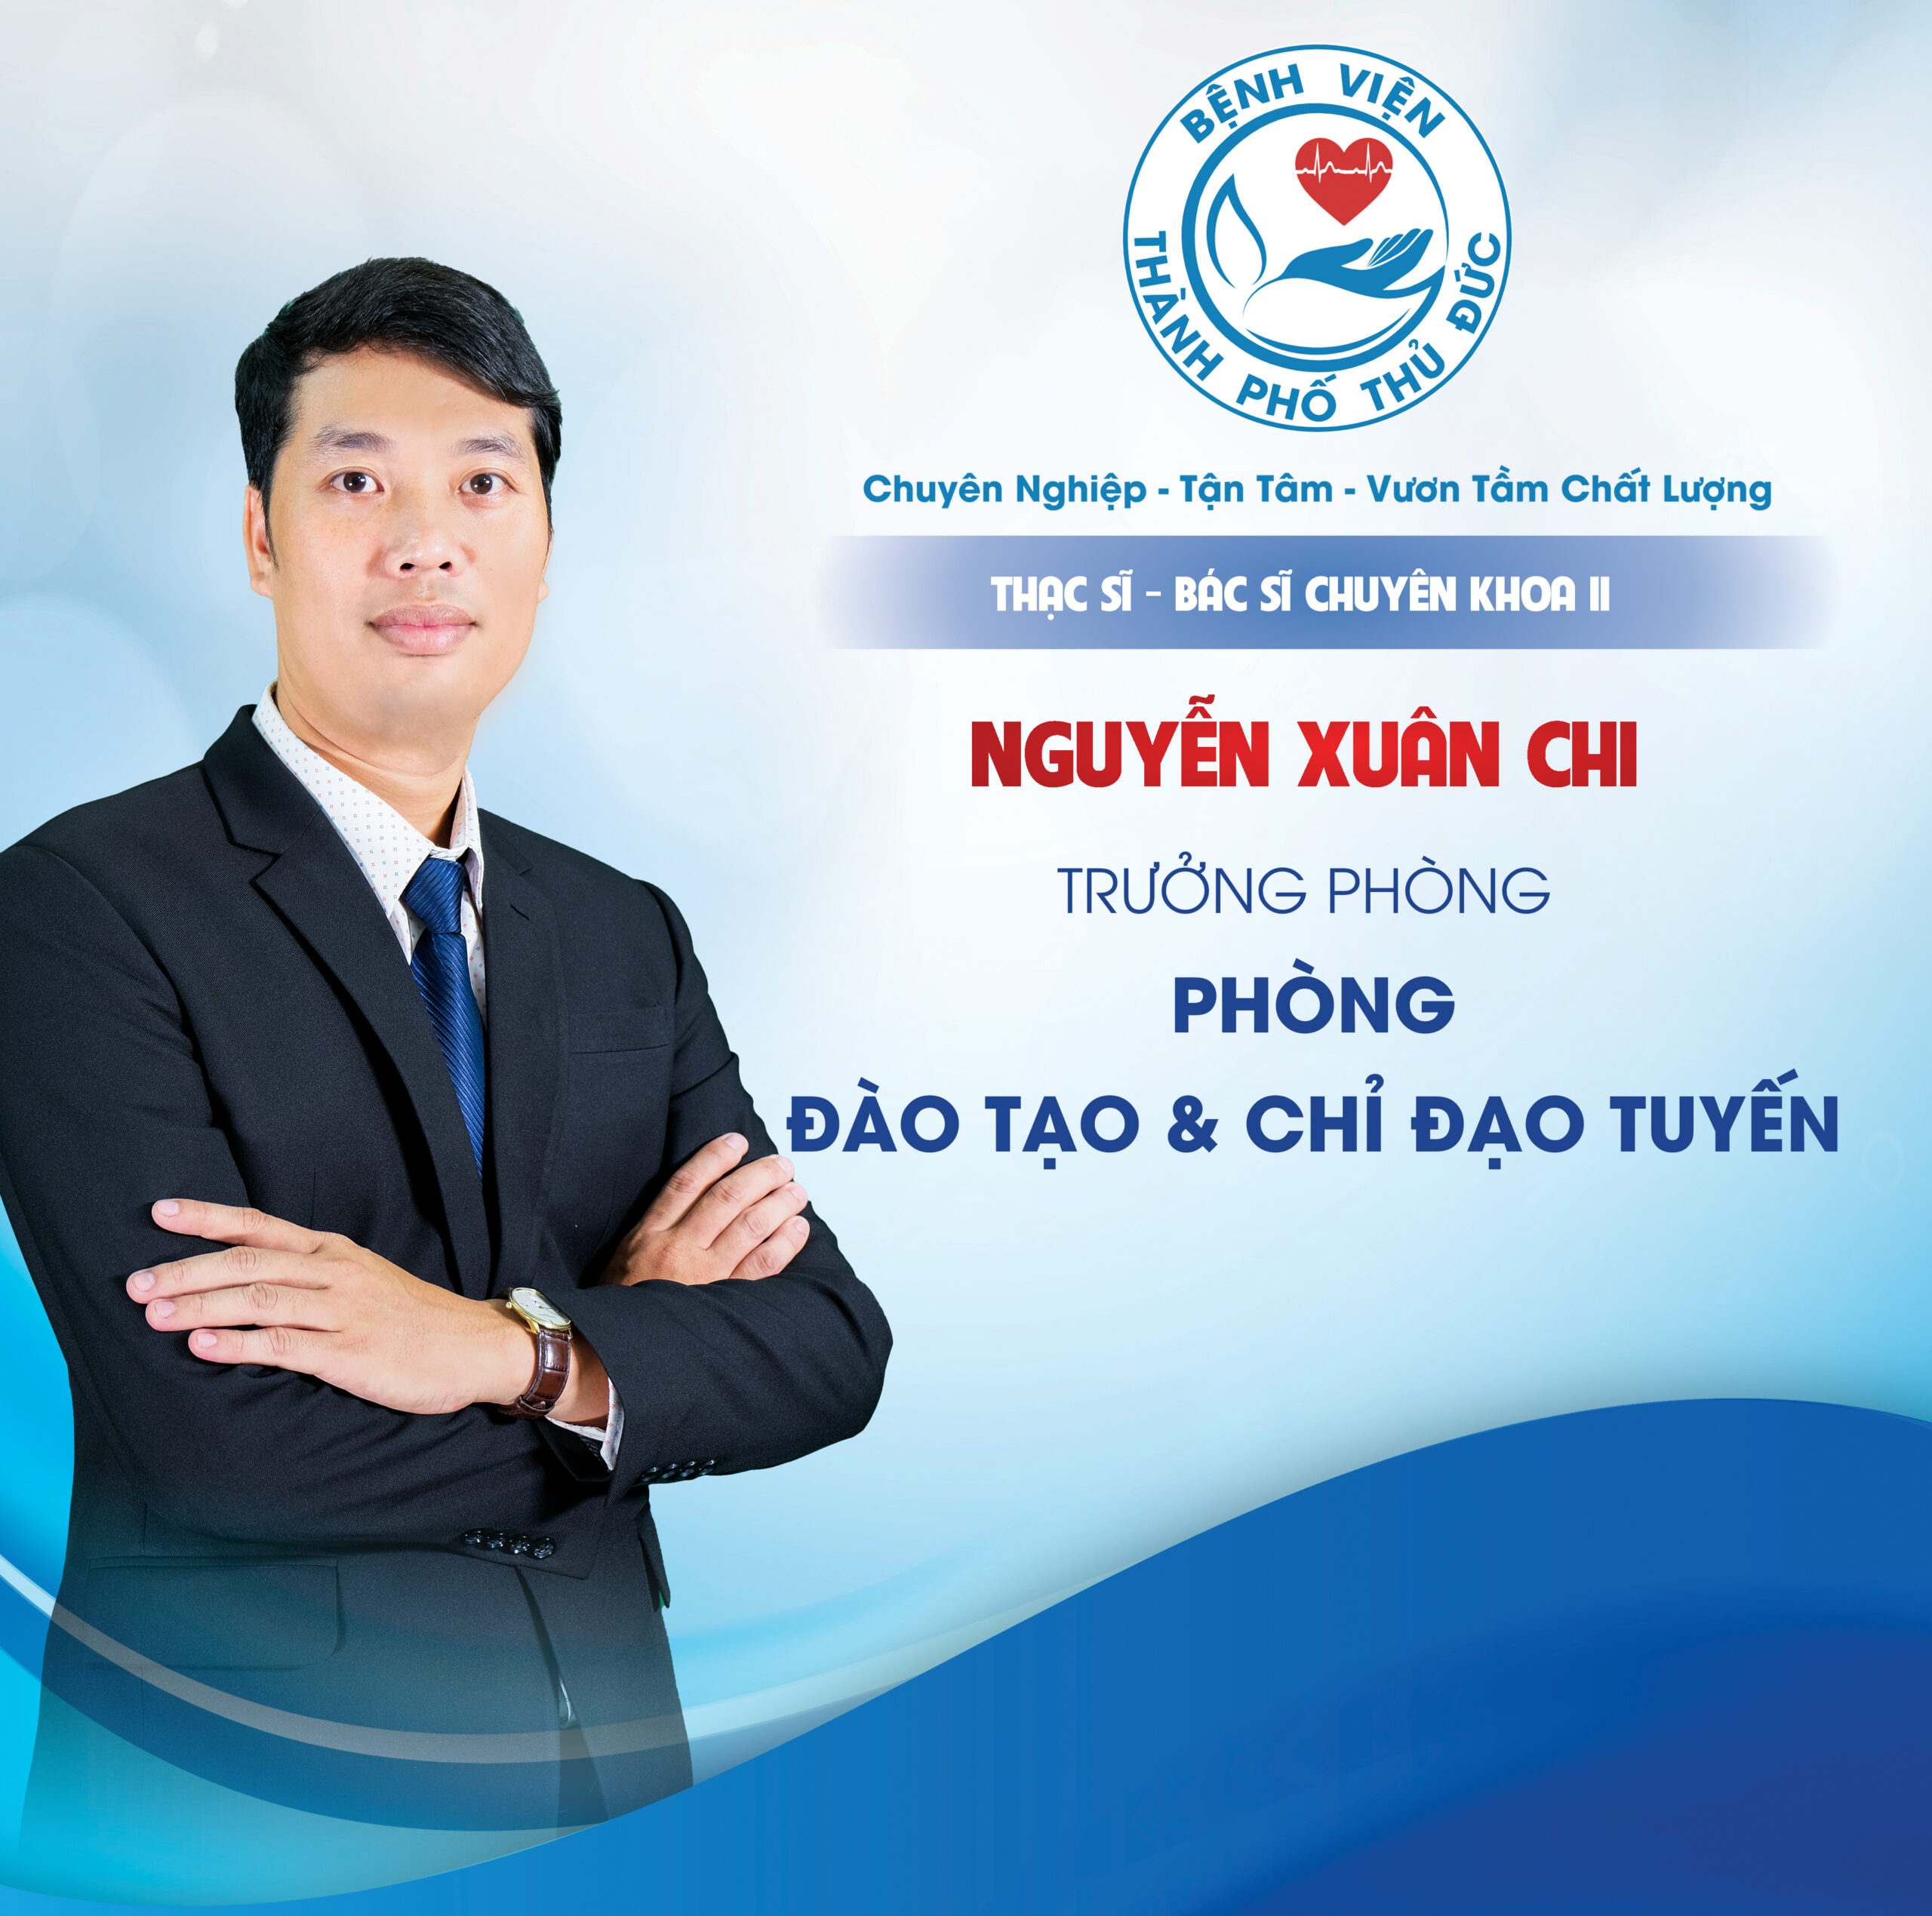 ThS.BSCKII Nguyễn Xuân Chi - Trưởng phòng Đào tạo & Chỉ đạo tuyến